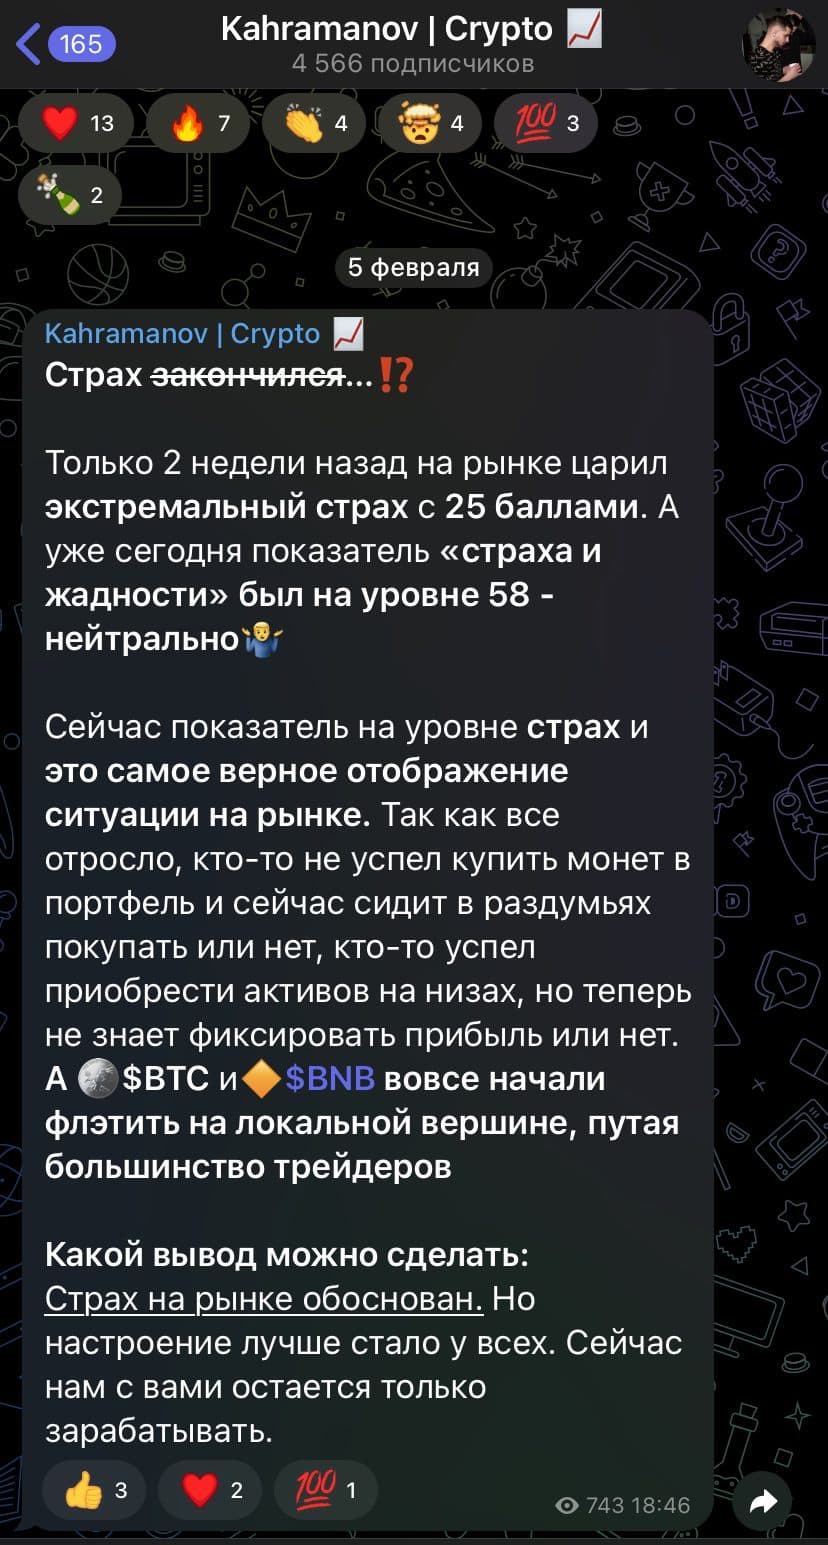 Kahramanov Crypto телеграм